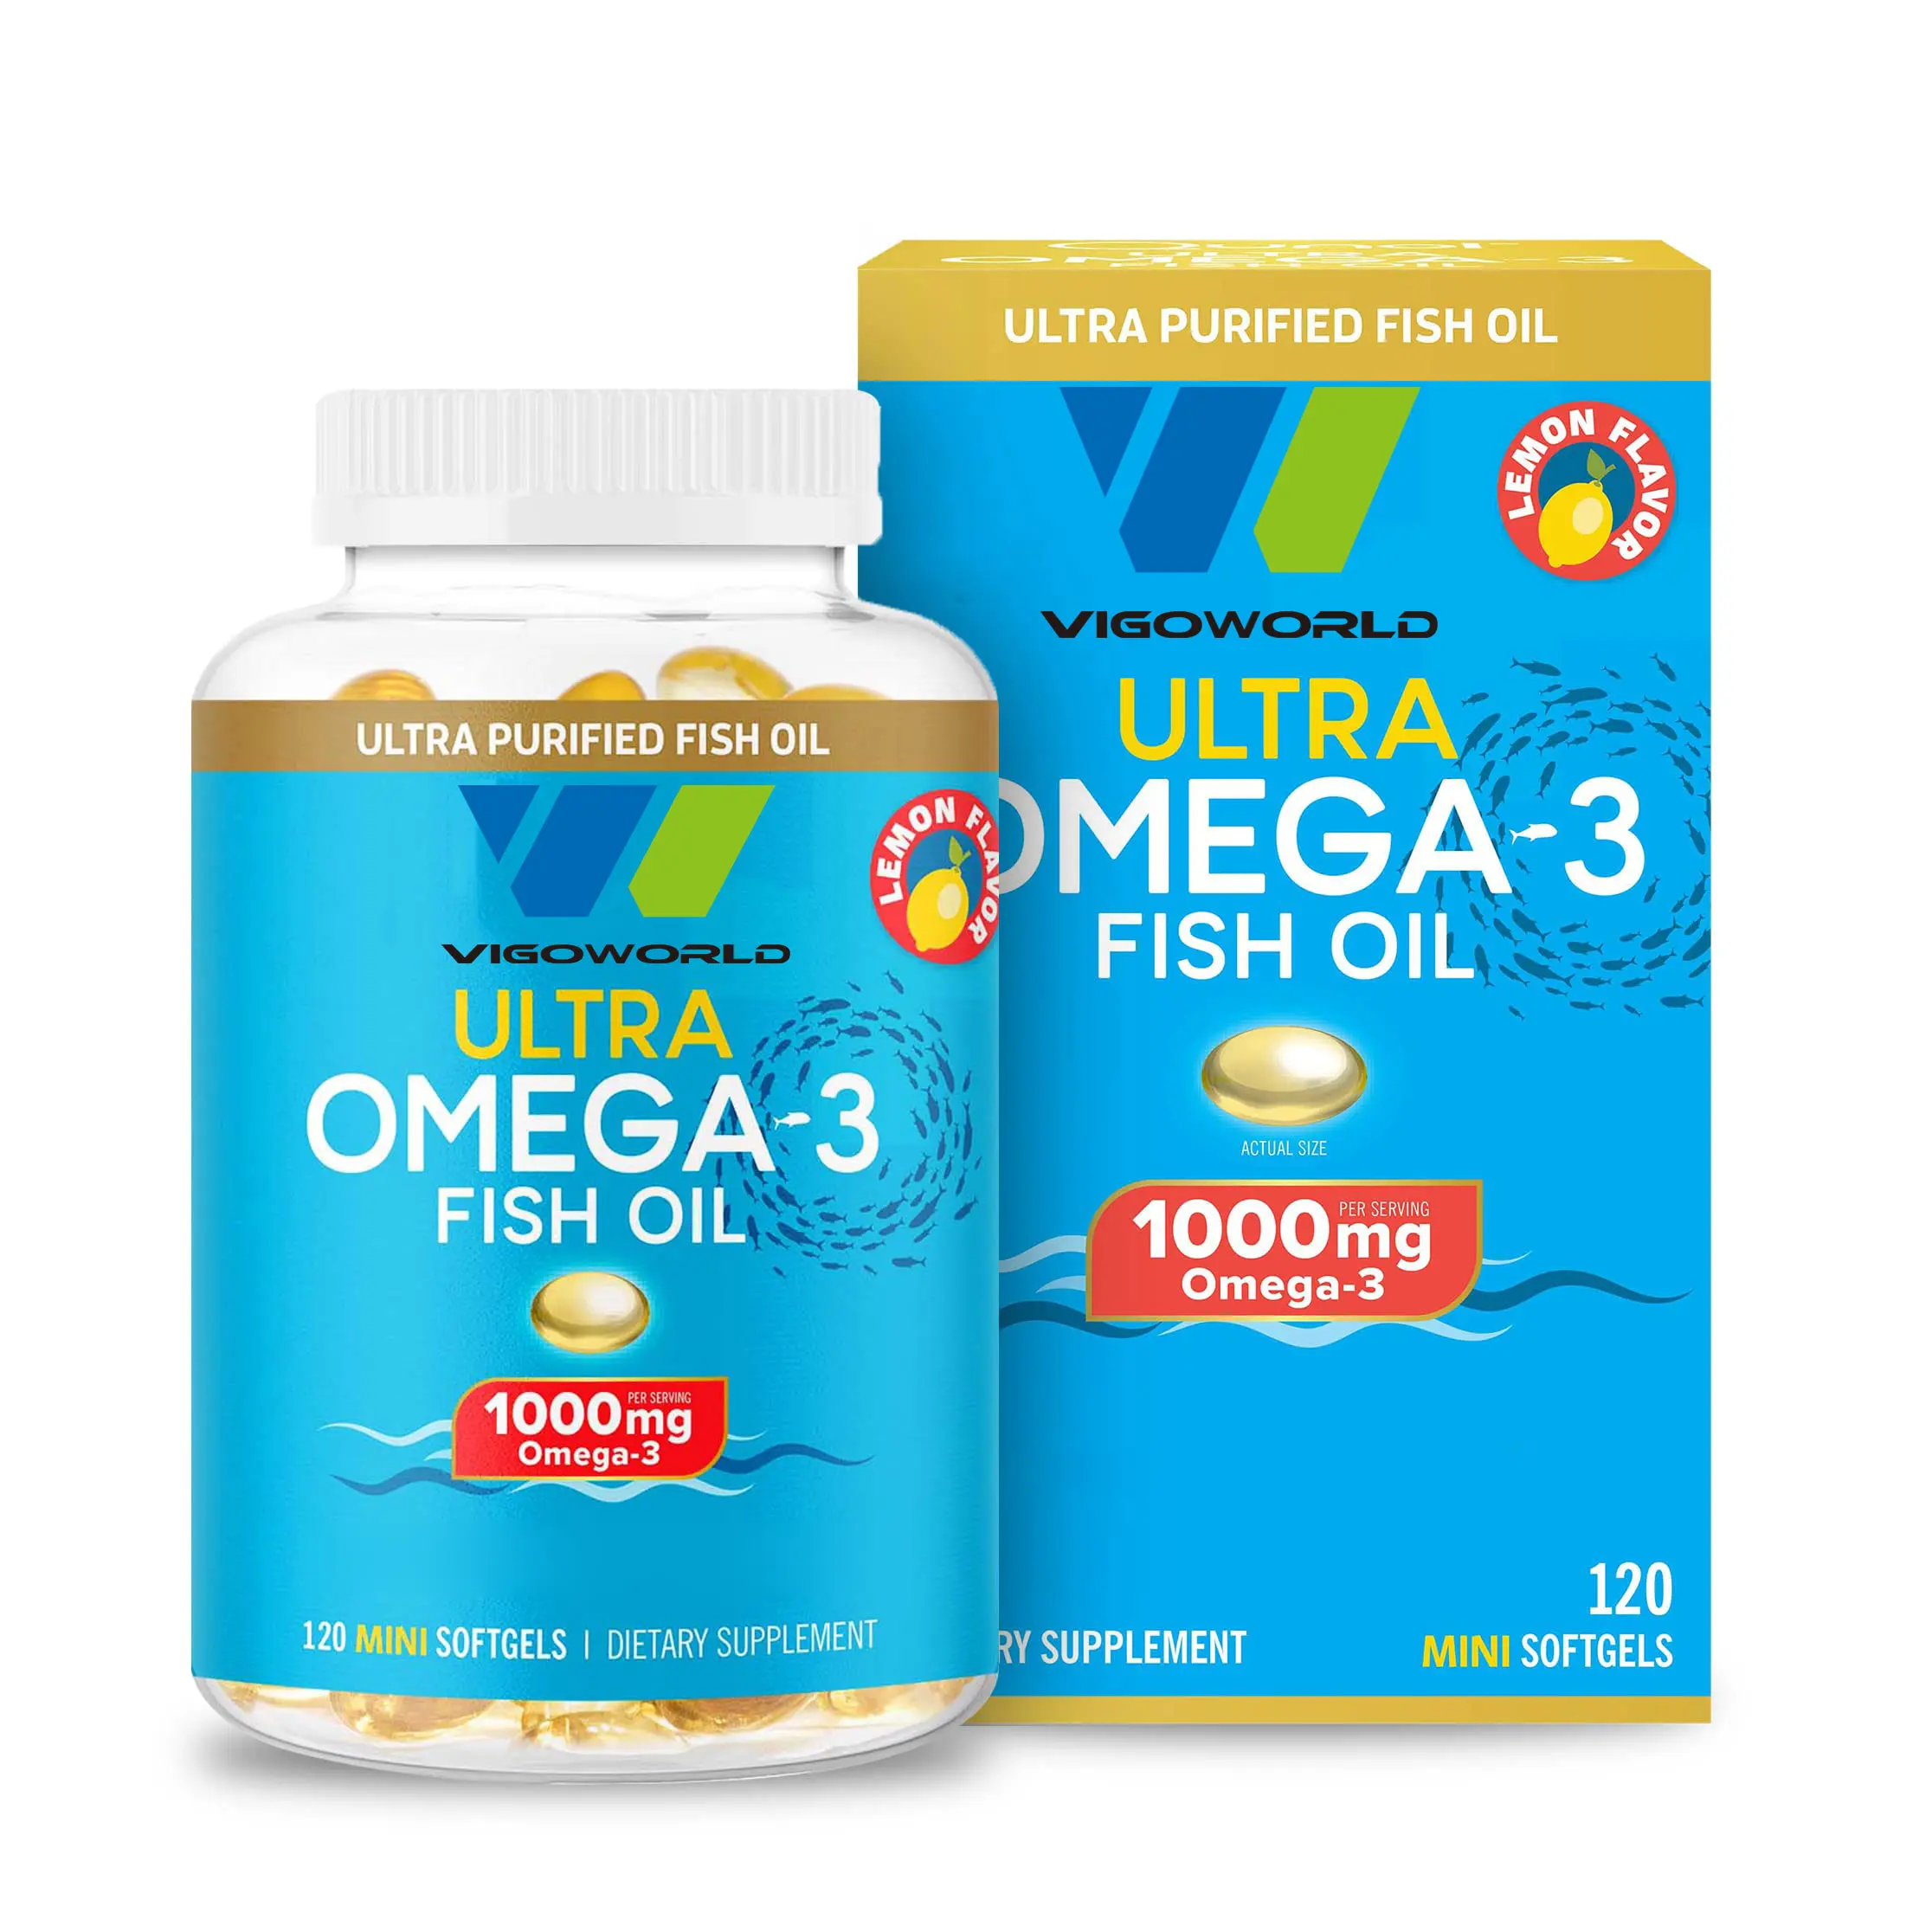 Minisoftgel omega 3 peixe puro, apoio suplementos omega3 dha para apoio do cérebro e saúde global